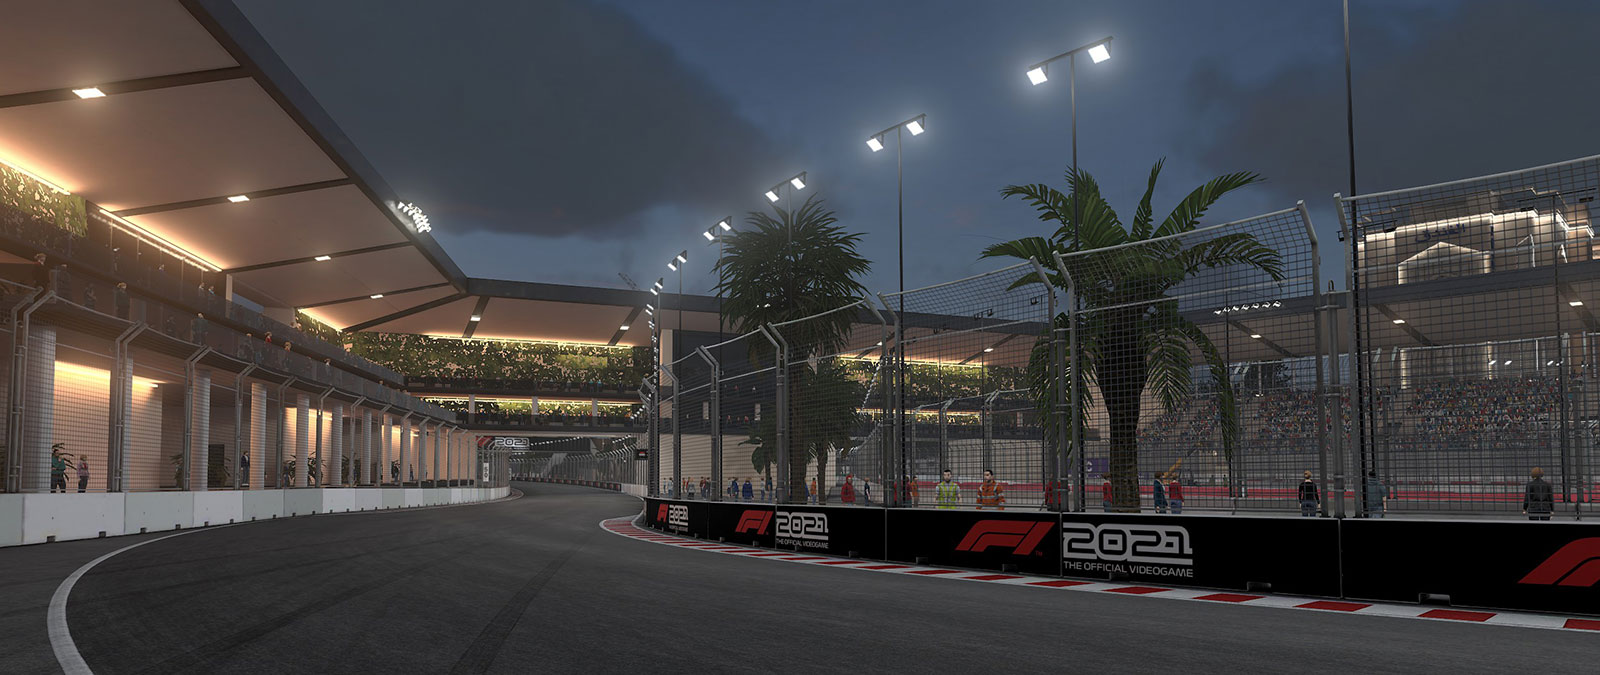 Juste après le coucher du soleil, un circuit de F1 est éclairé par les lampadaires, tandis que les spectateurs scrutent depuis les tribunes.